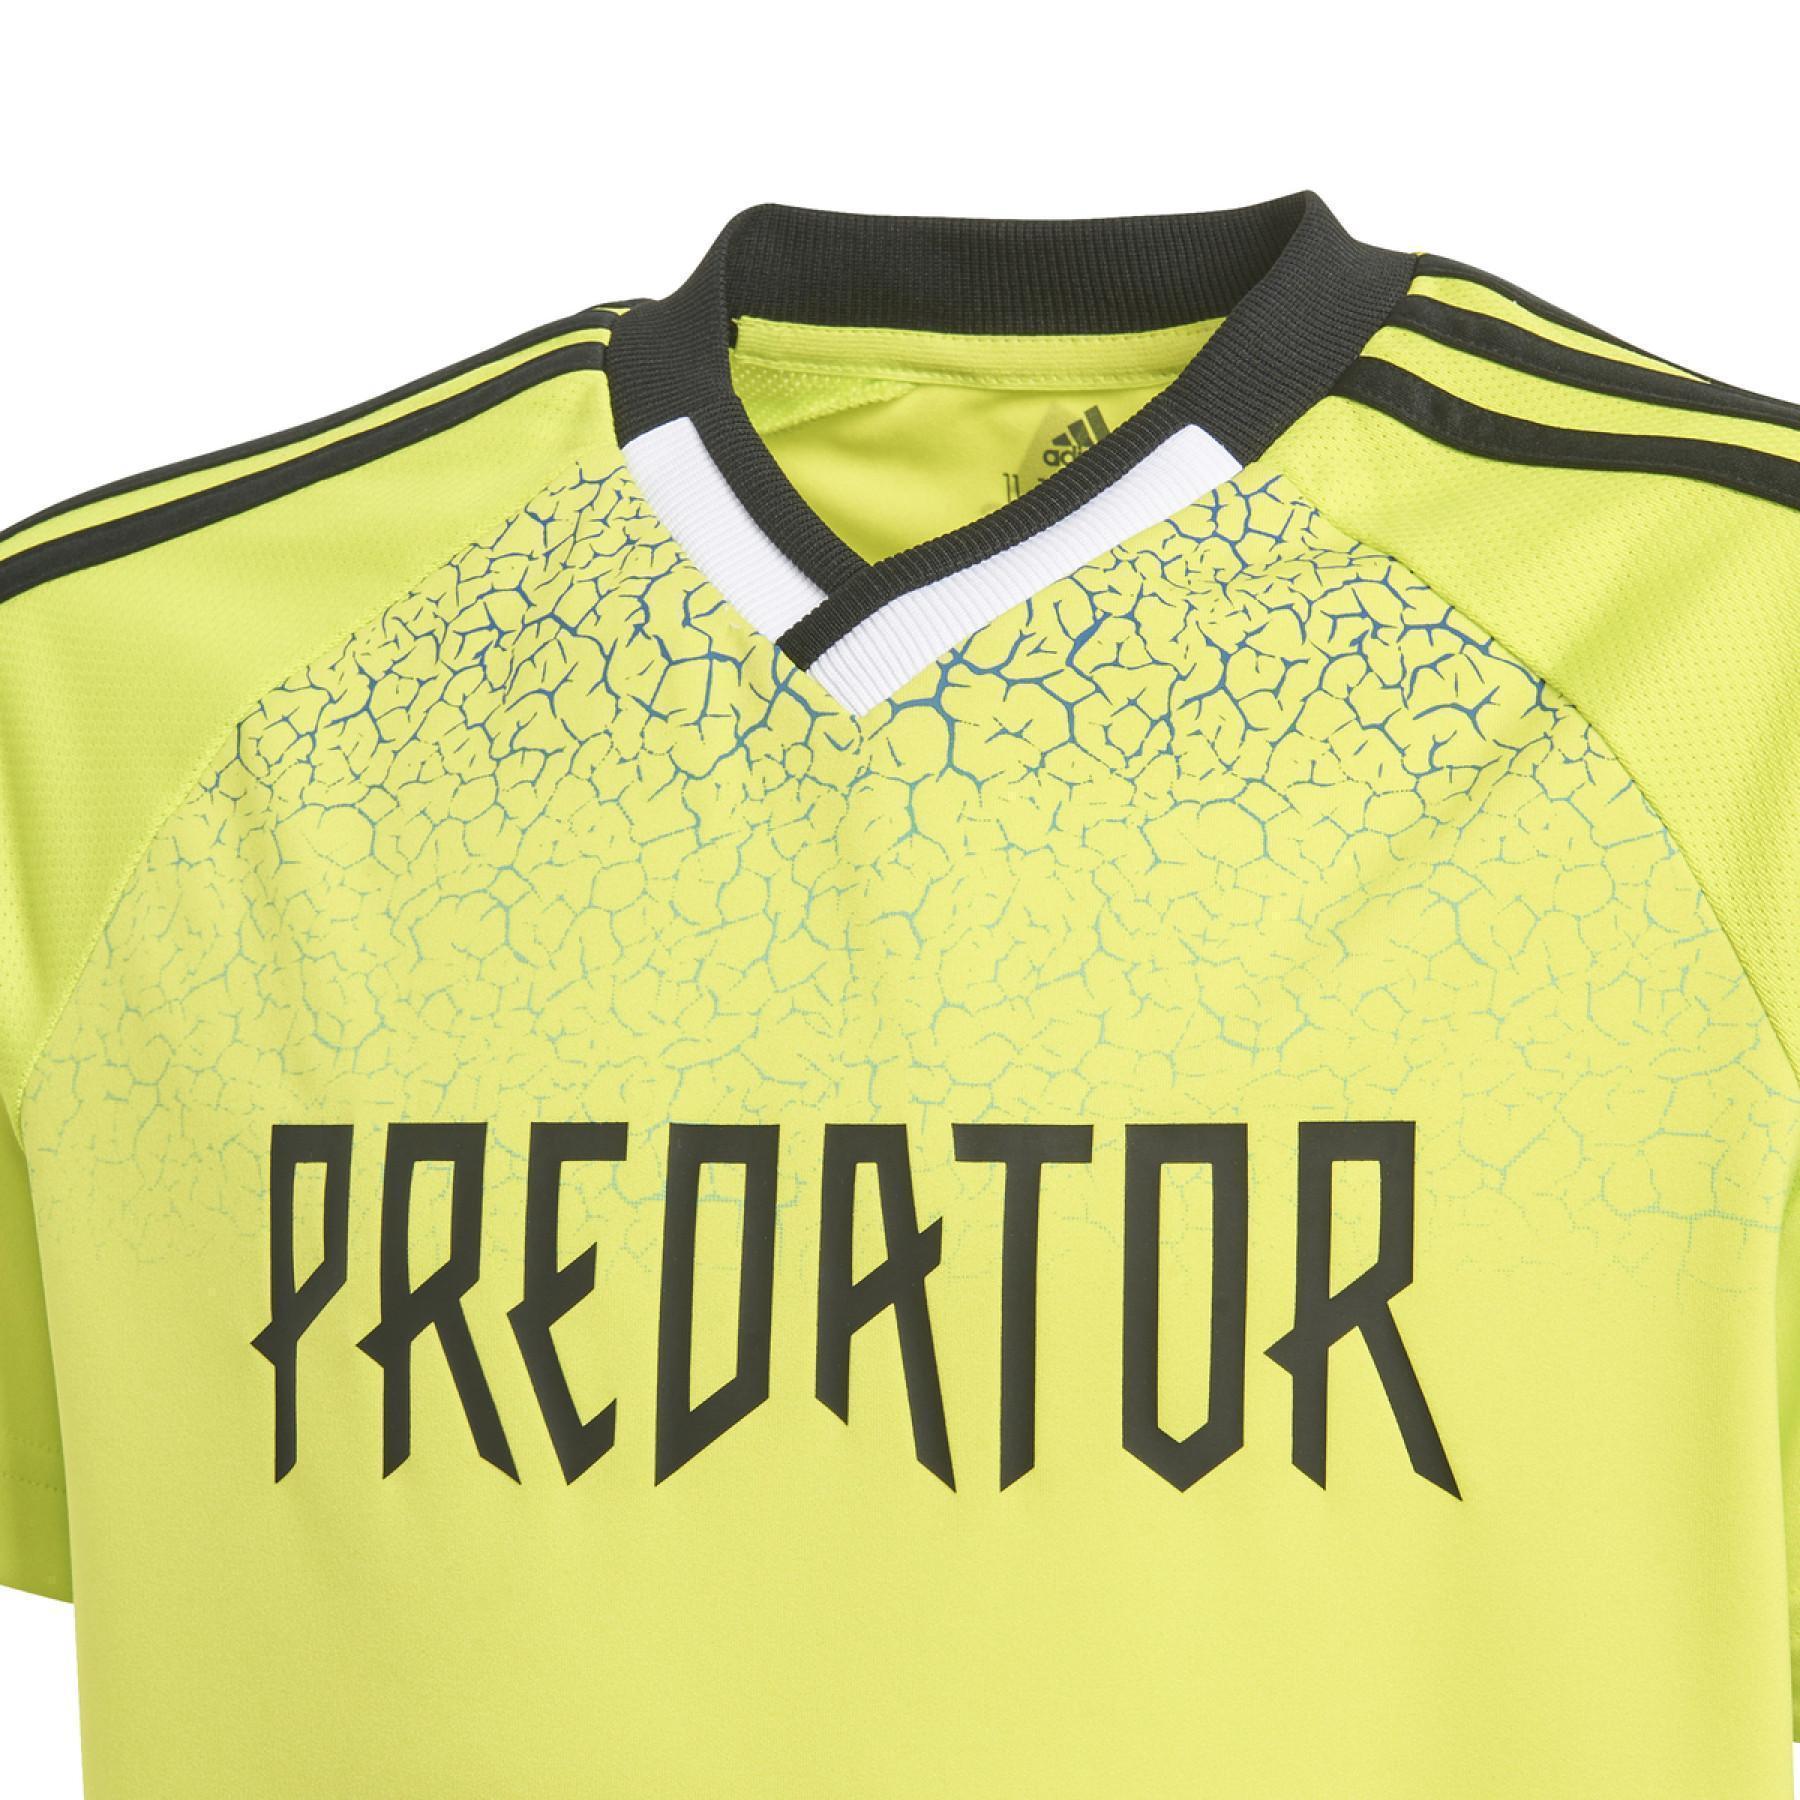 Camisola para crianças adidas Predator Football-Inspired